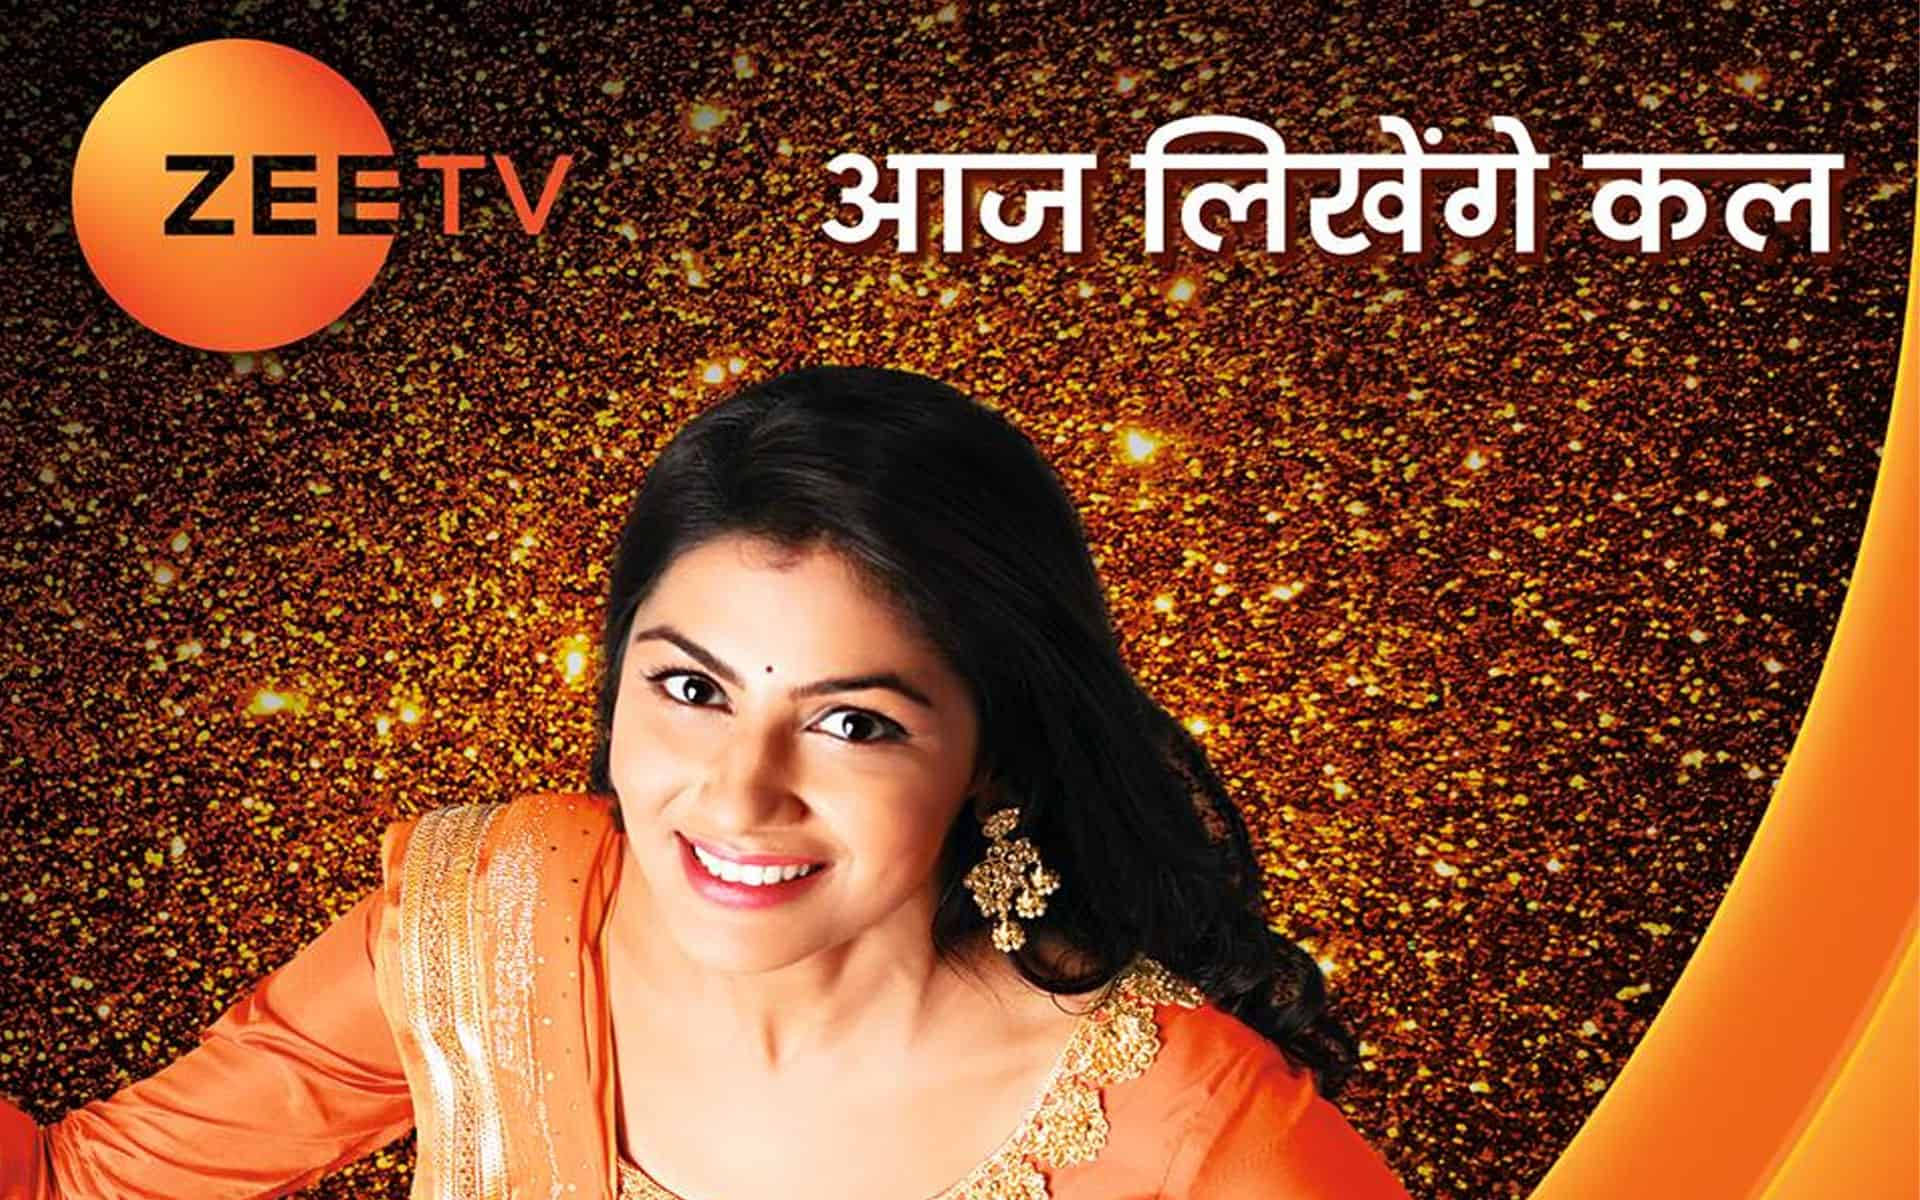 Sritijha Marknadsför Zee Tv Som Dator- Eller Mobilbakgrundsbild. Wallpaper